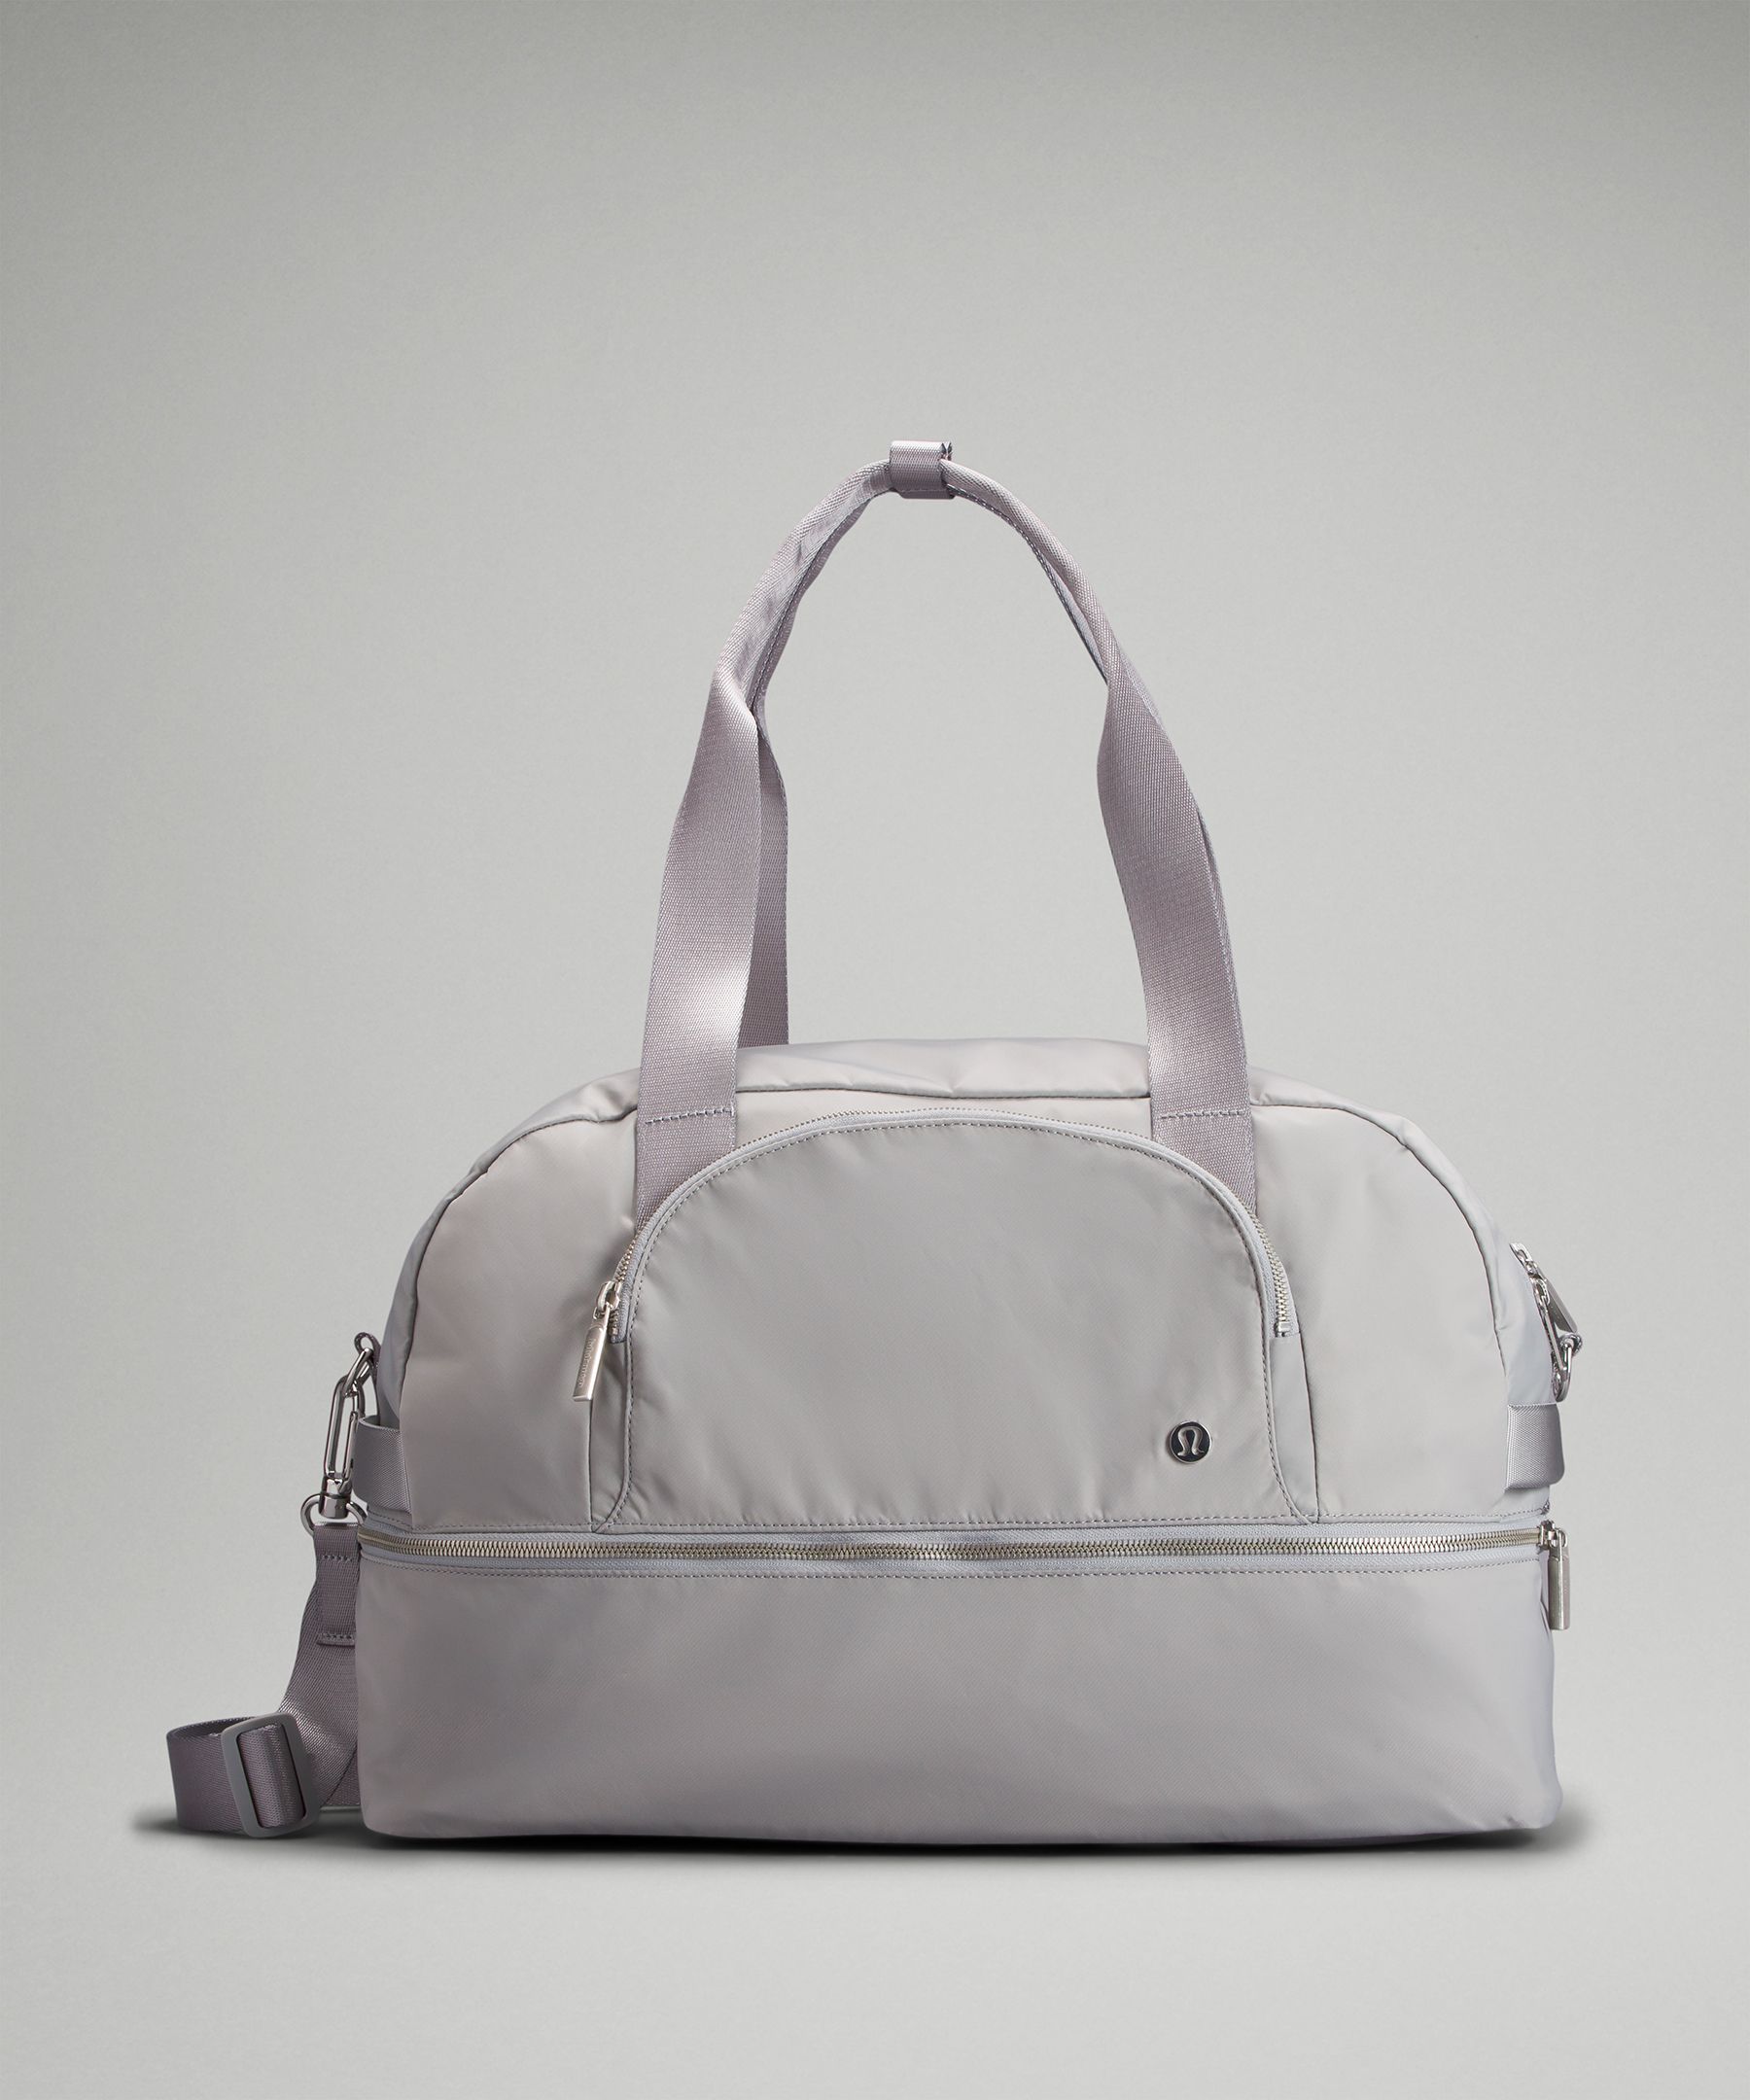 City Adventurer Large Duffle Bag 29L | Women's Bags,Purses,Wallets | lululemon